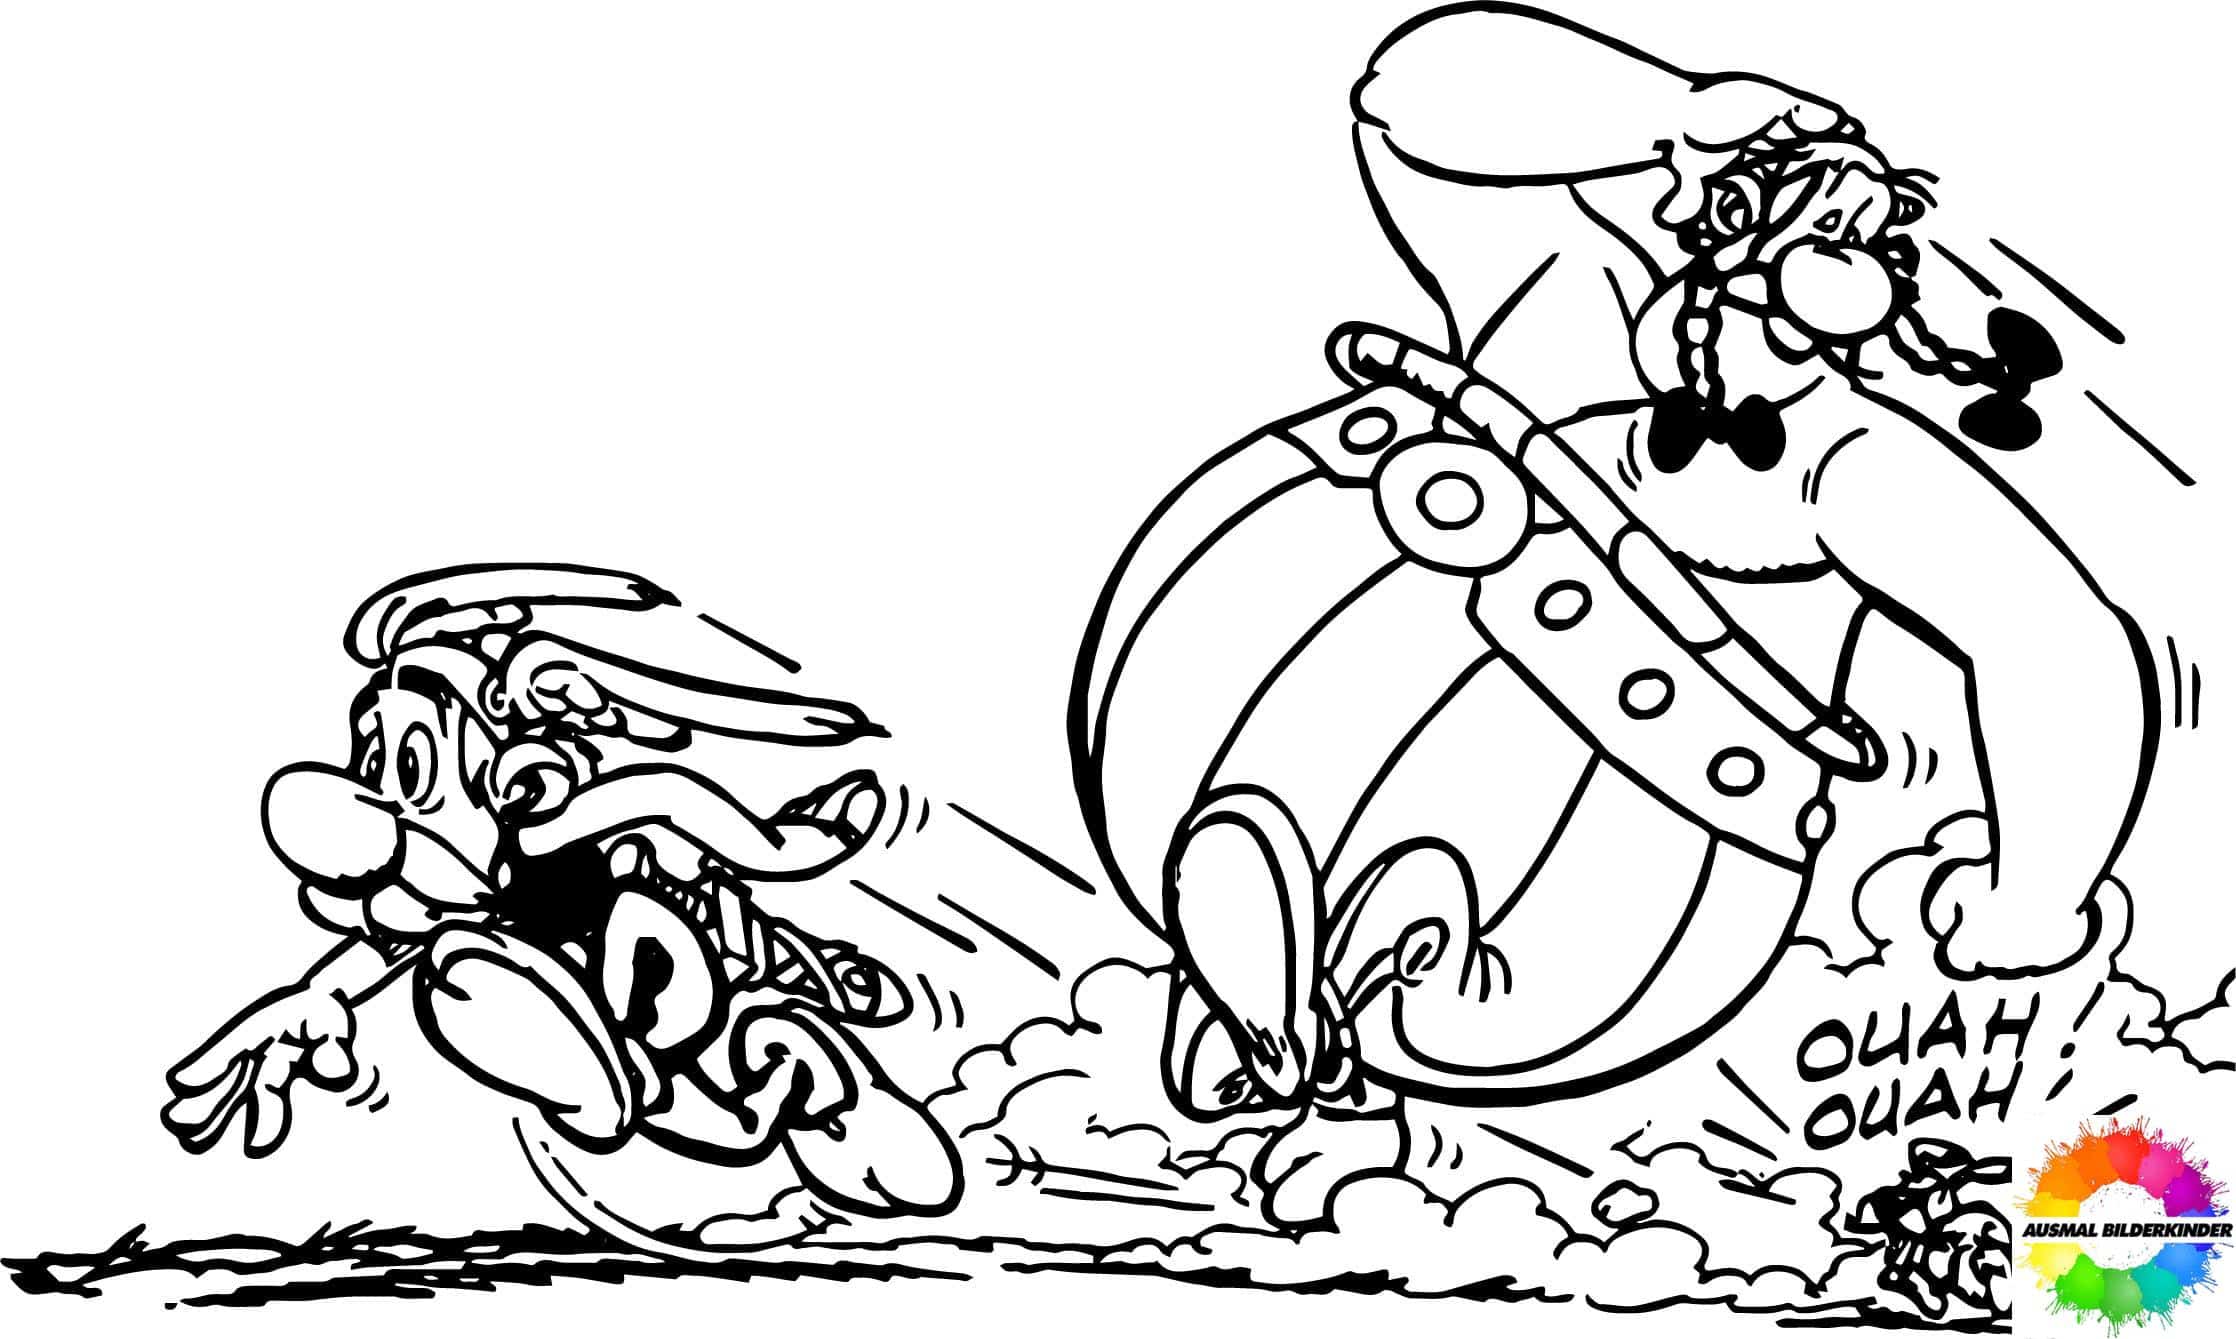 Asterix and Obelix 12